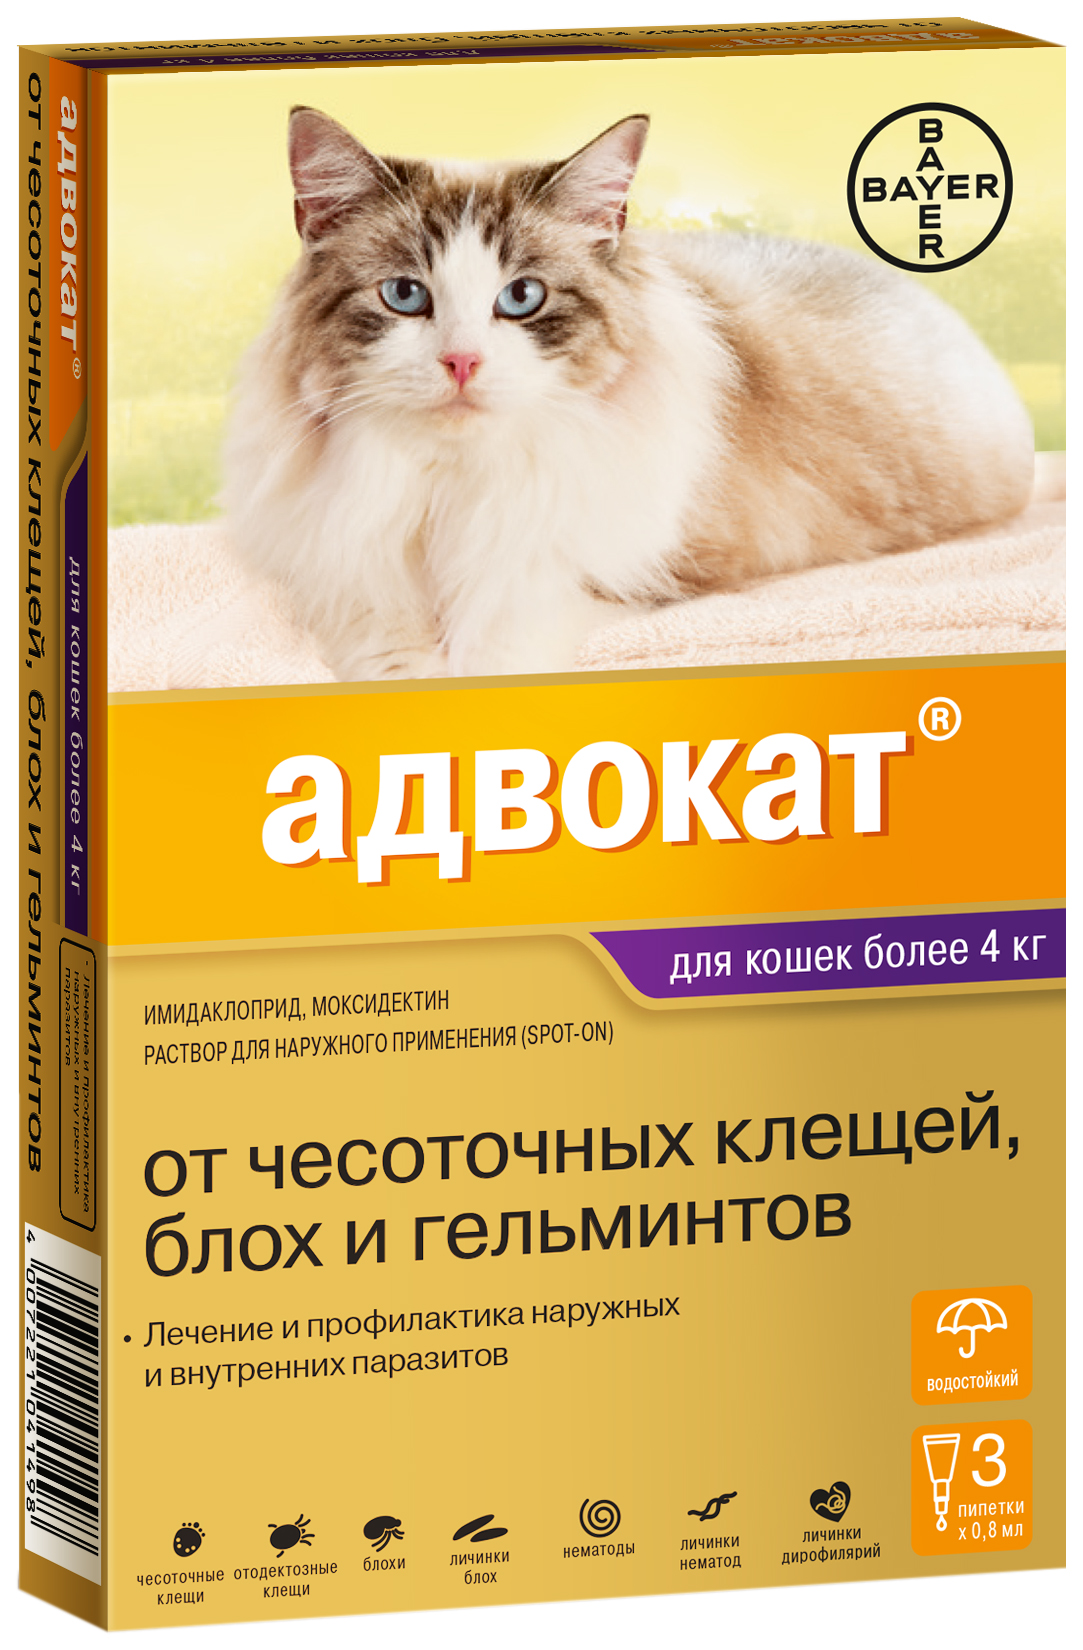 Капли для кошек против блох, глистов, клещей Elanco Адвокат, от 4 кг, 3 пипетки, 0,8 мл